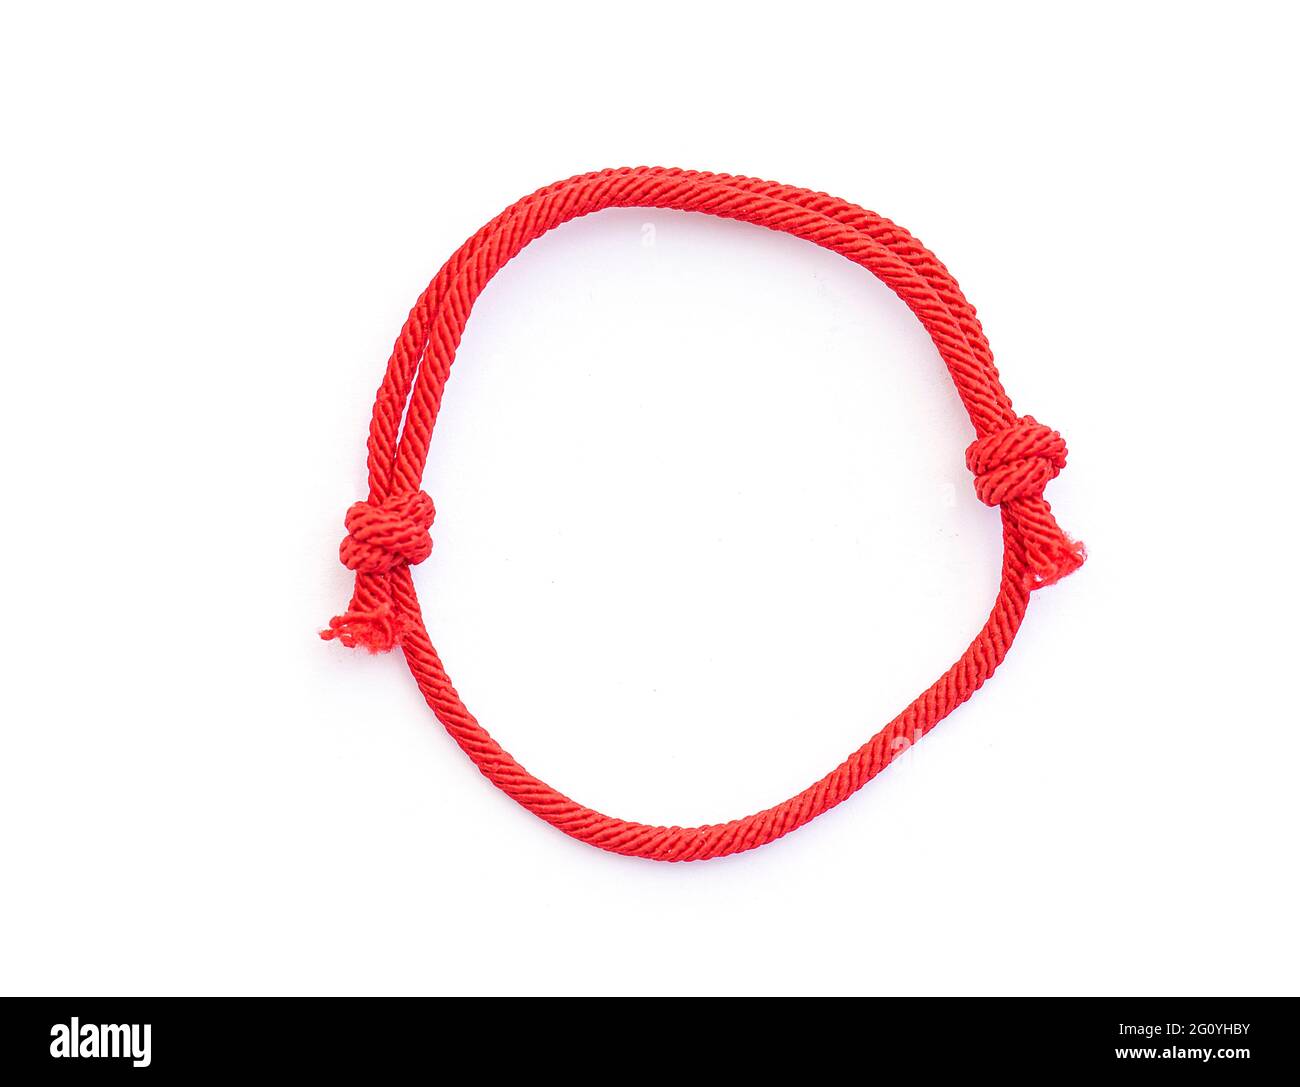 Filo rosso, cordoncino come amuleto per polso isolato su bianco. Bracciale rosso con nodi. Vista dall'alto. Foto Stock